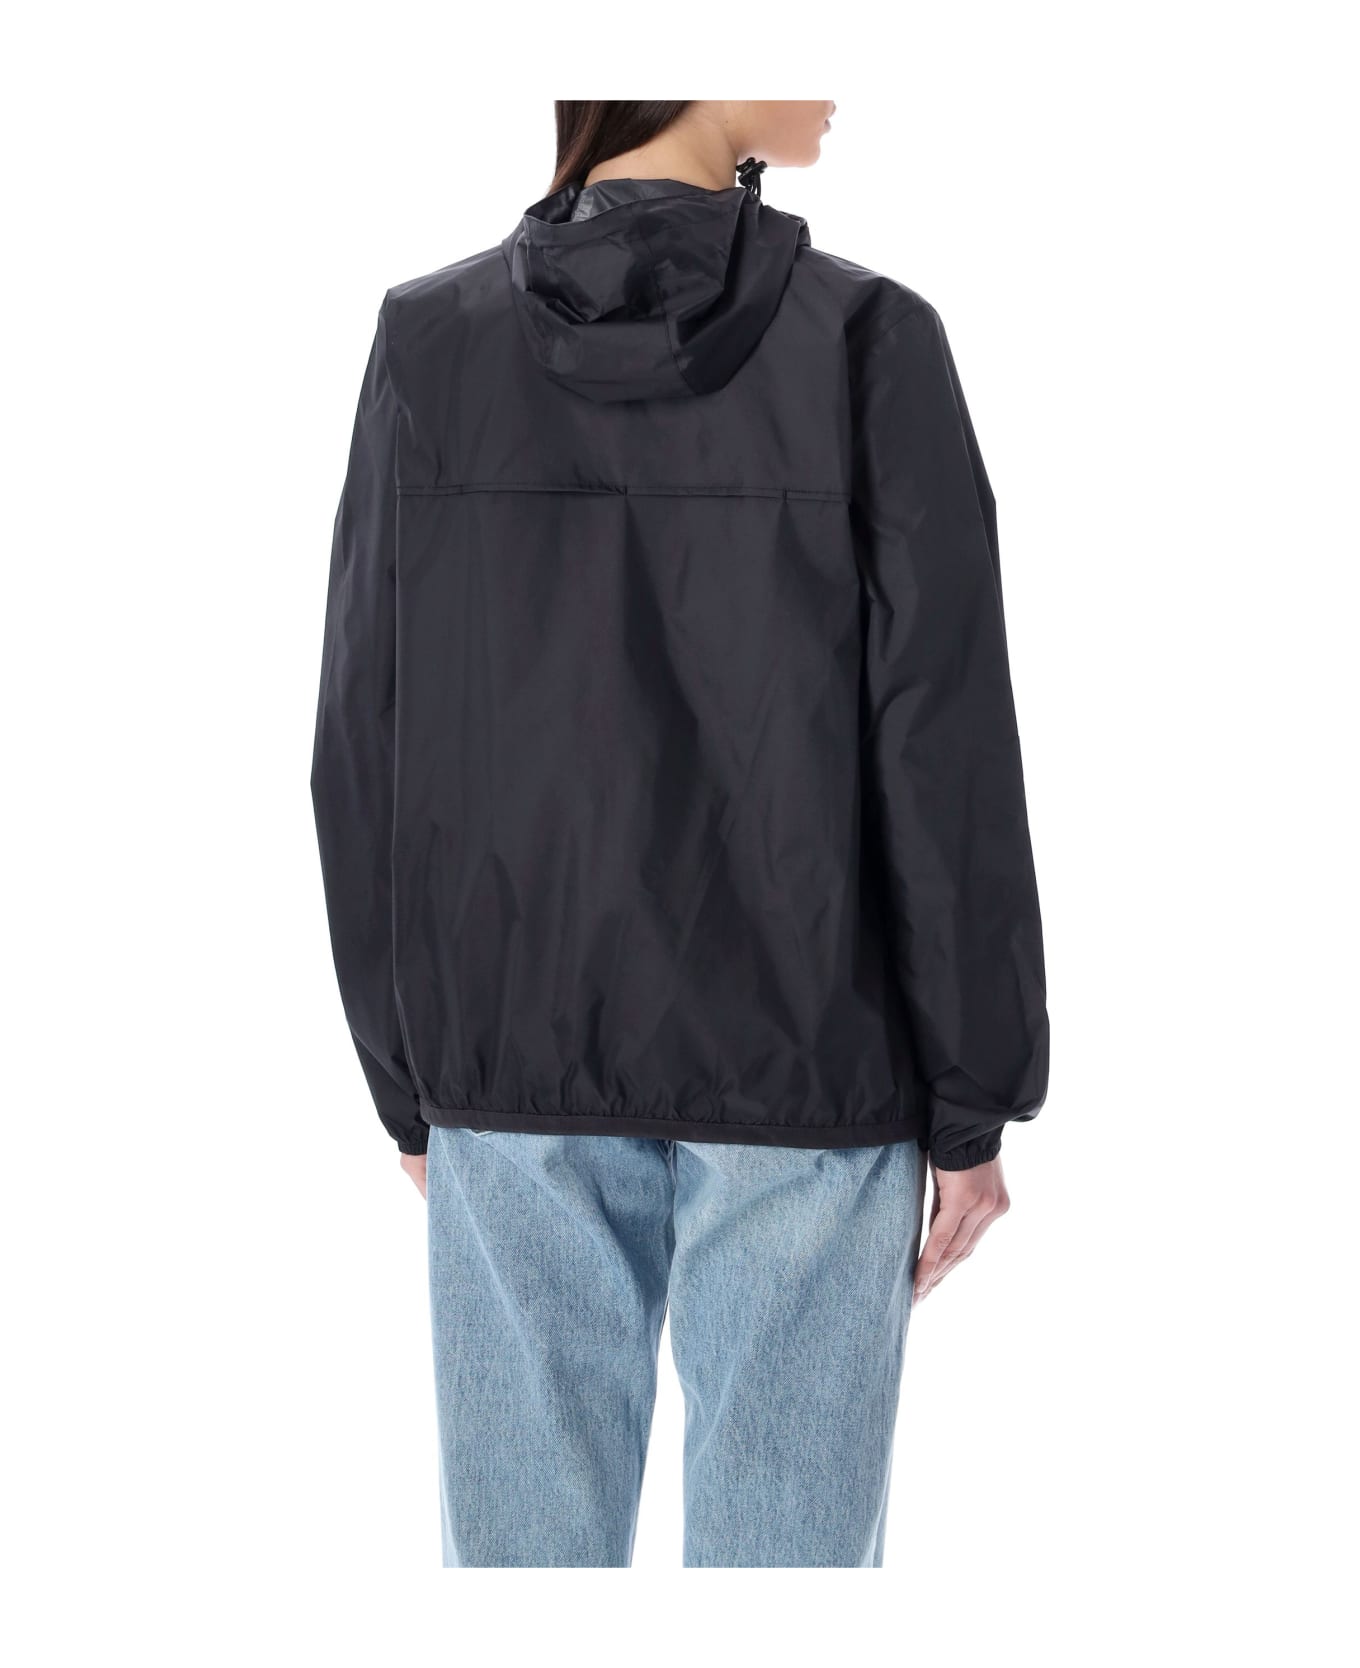 Comme des Garçons Play Bicolor Waterproof Zip Jacket With Hood - ORANGE BLACK ジャケット